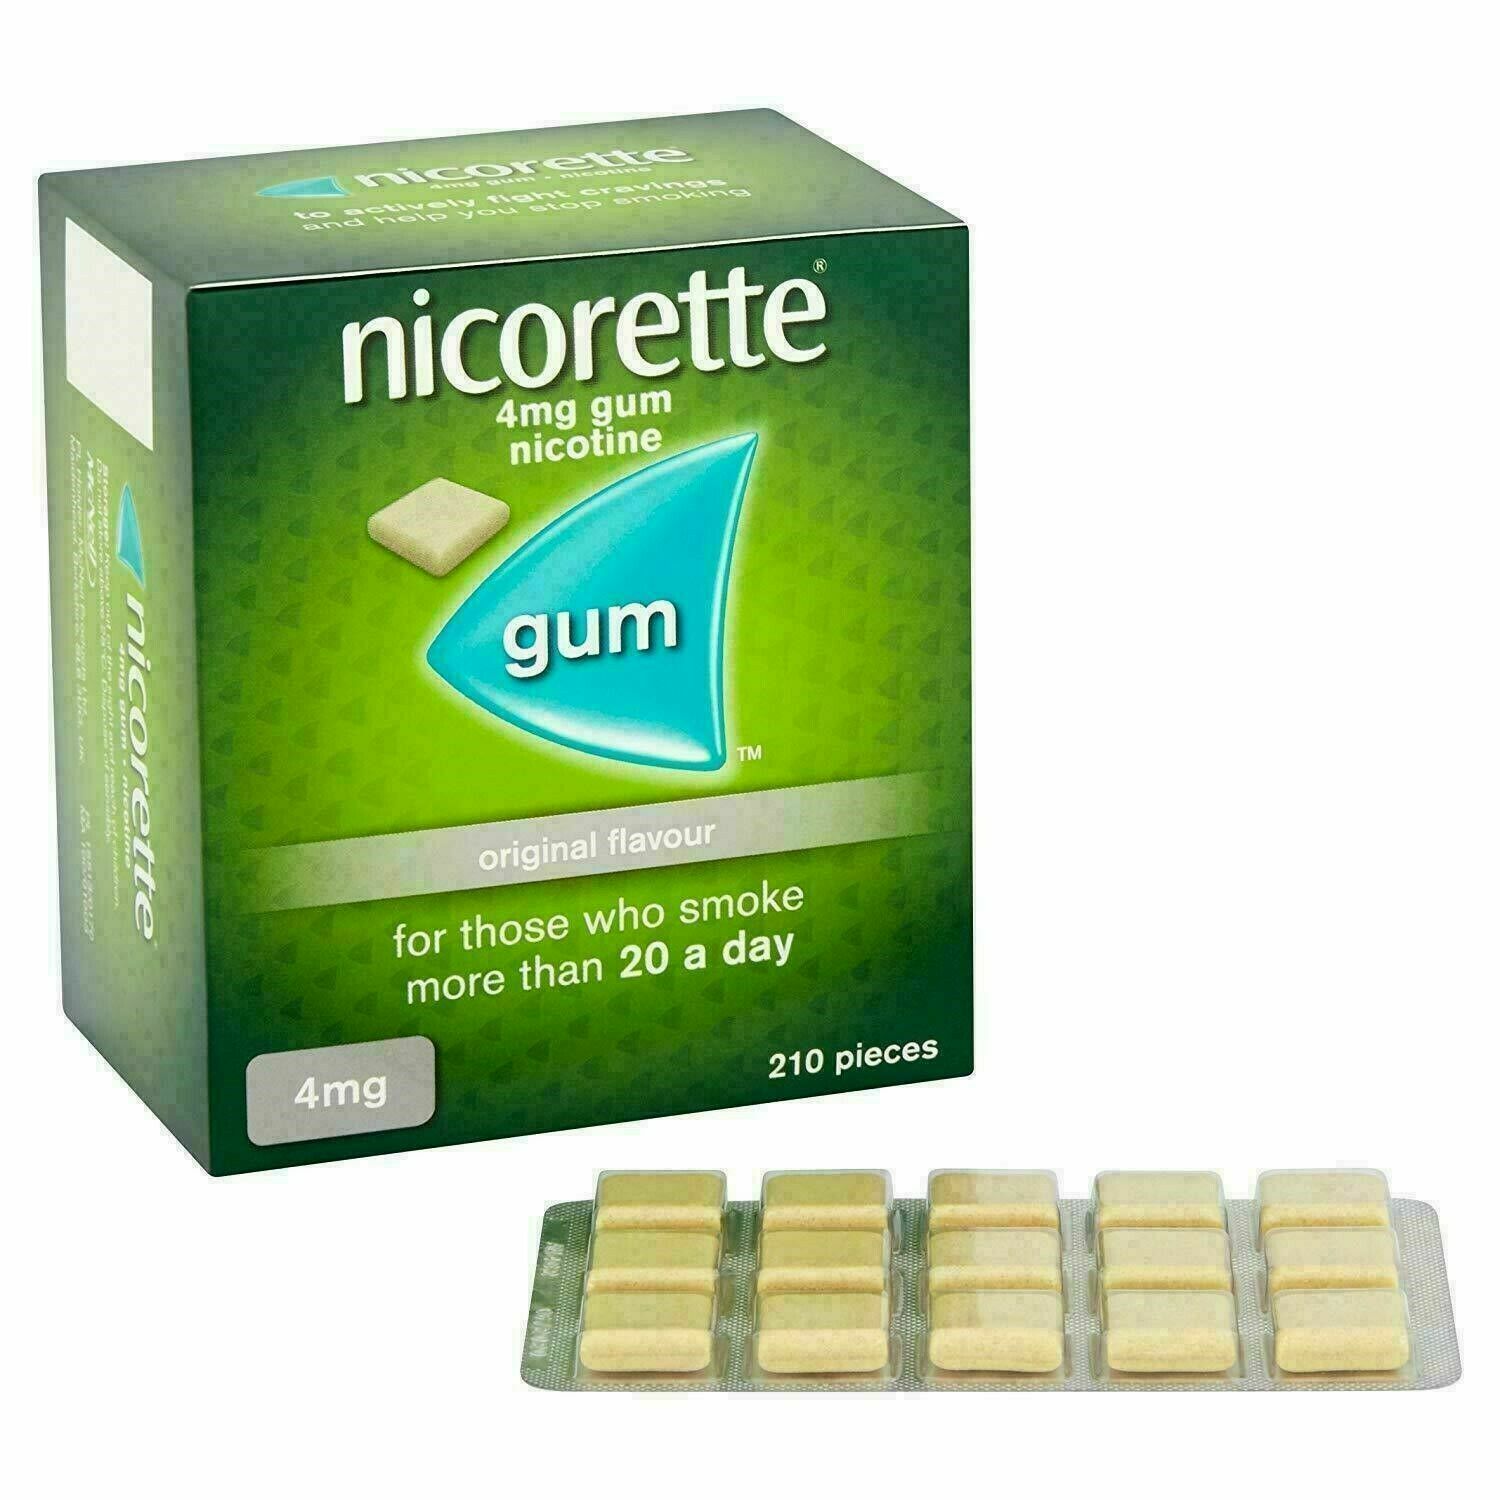 Nicorette Original Flavour Gum 4mg 210 Pieces Fast Ship From Usa Exp 2021